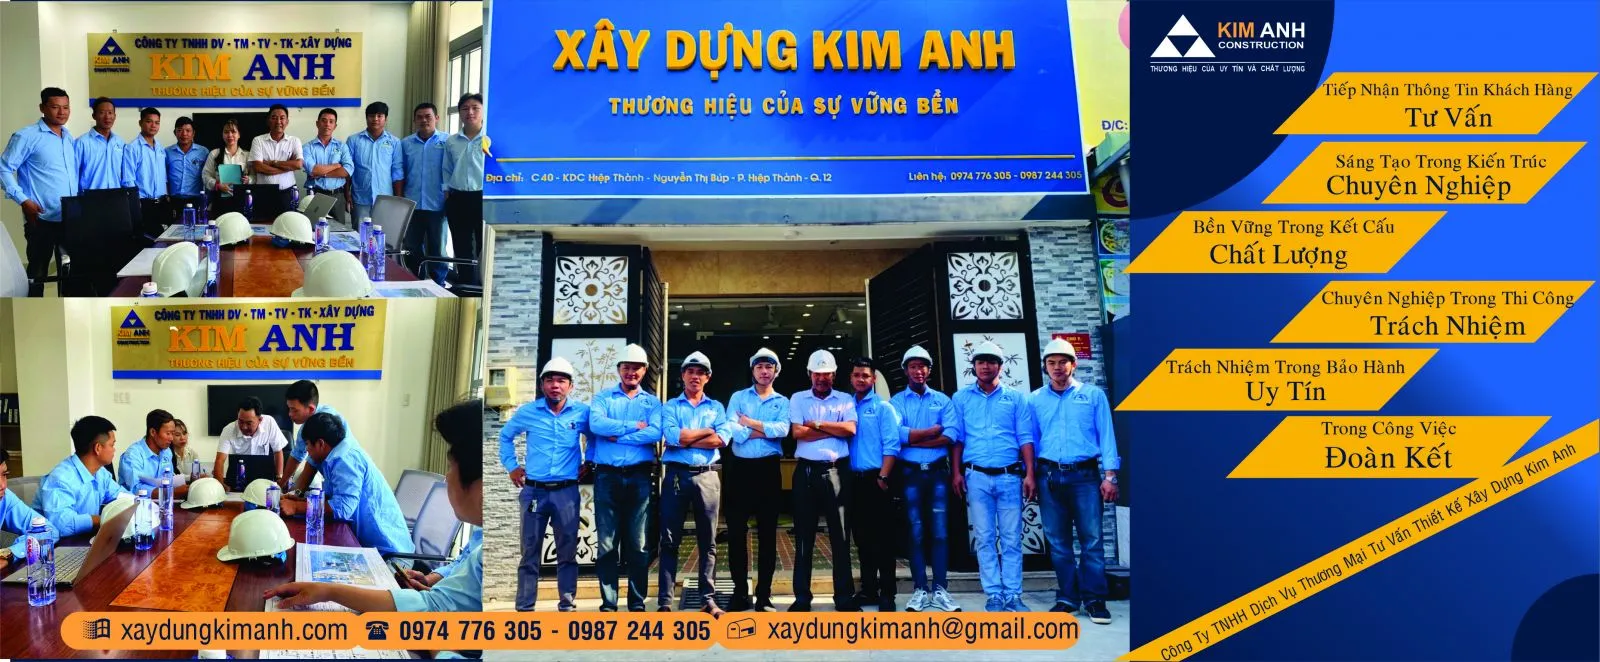 Xây Dựng Kim Anh: Công ty xây dựng nhà uy tín Quận 3-xaydungkimanh.com